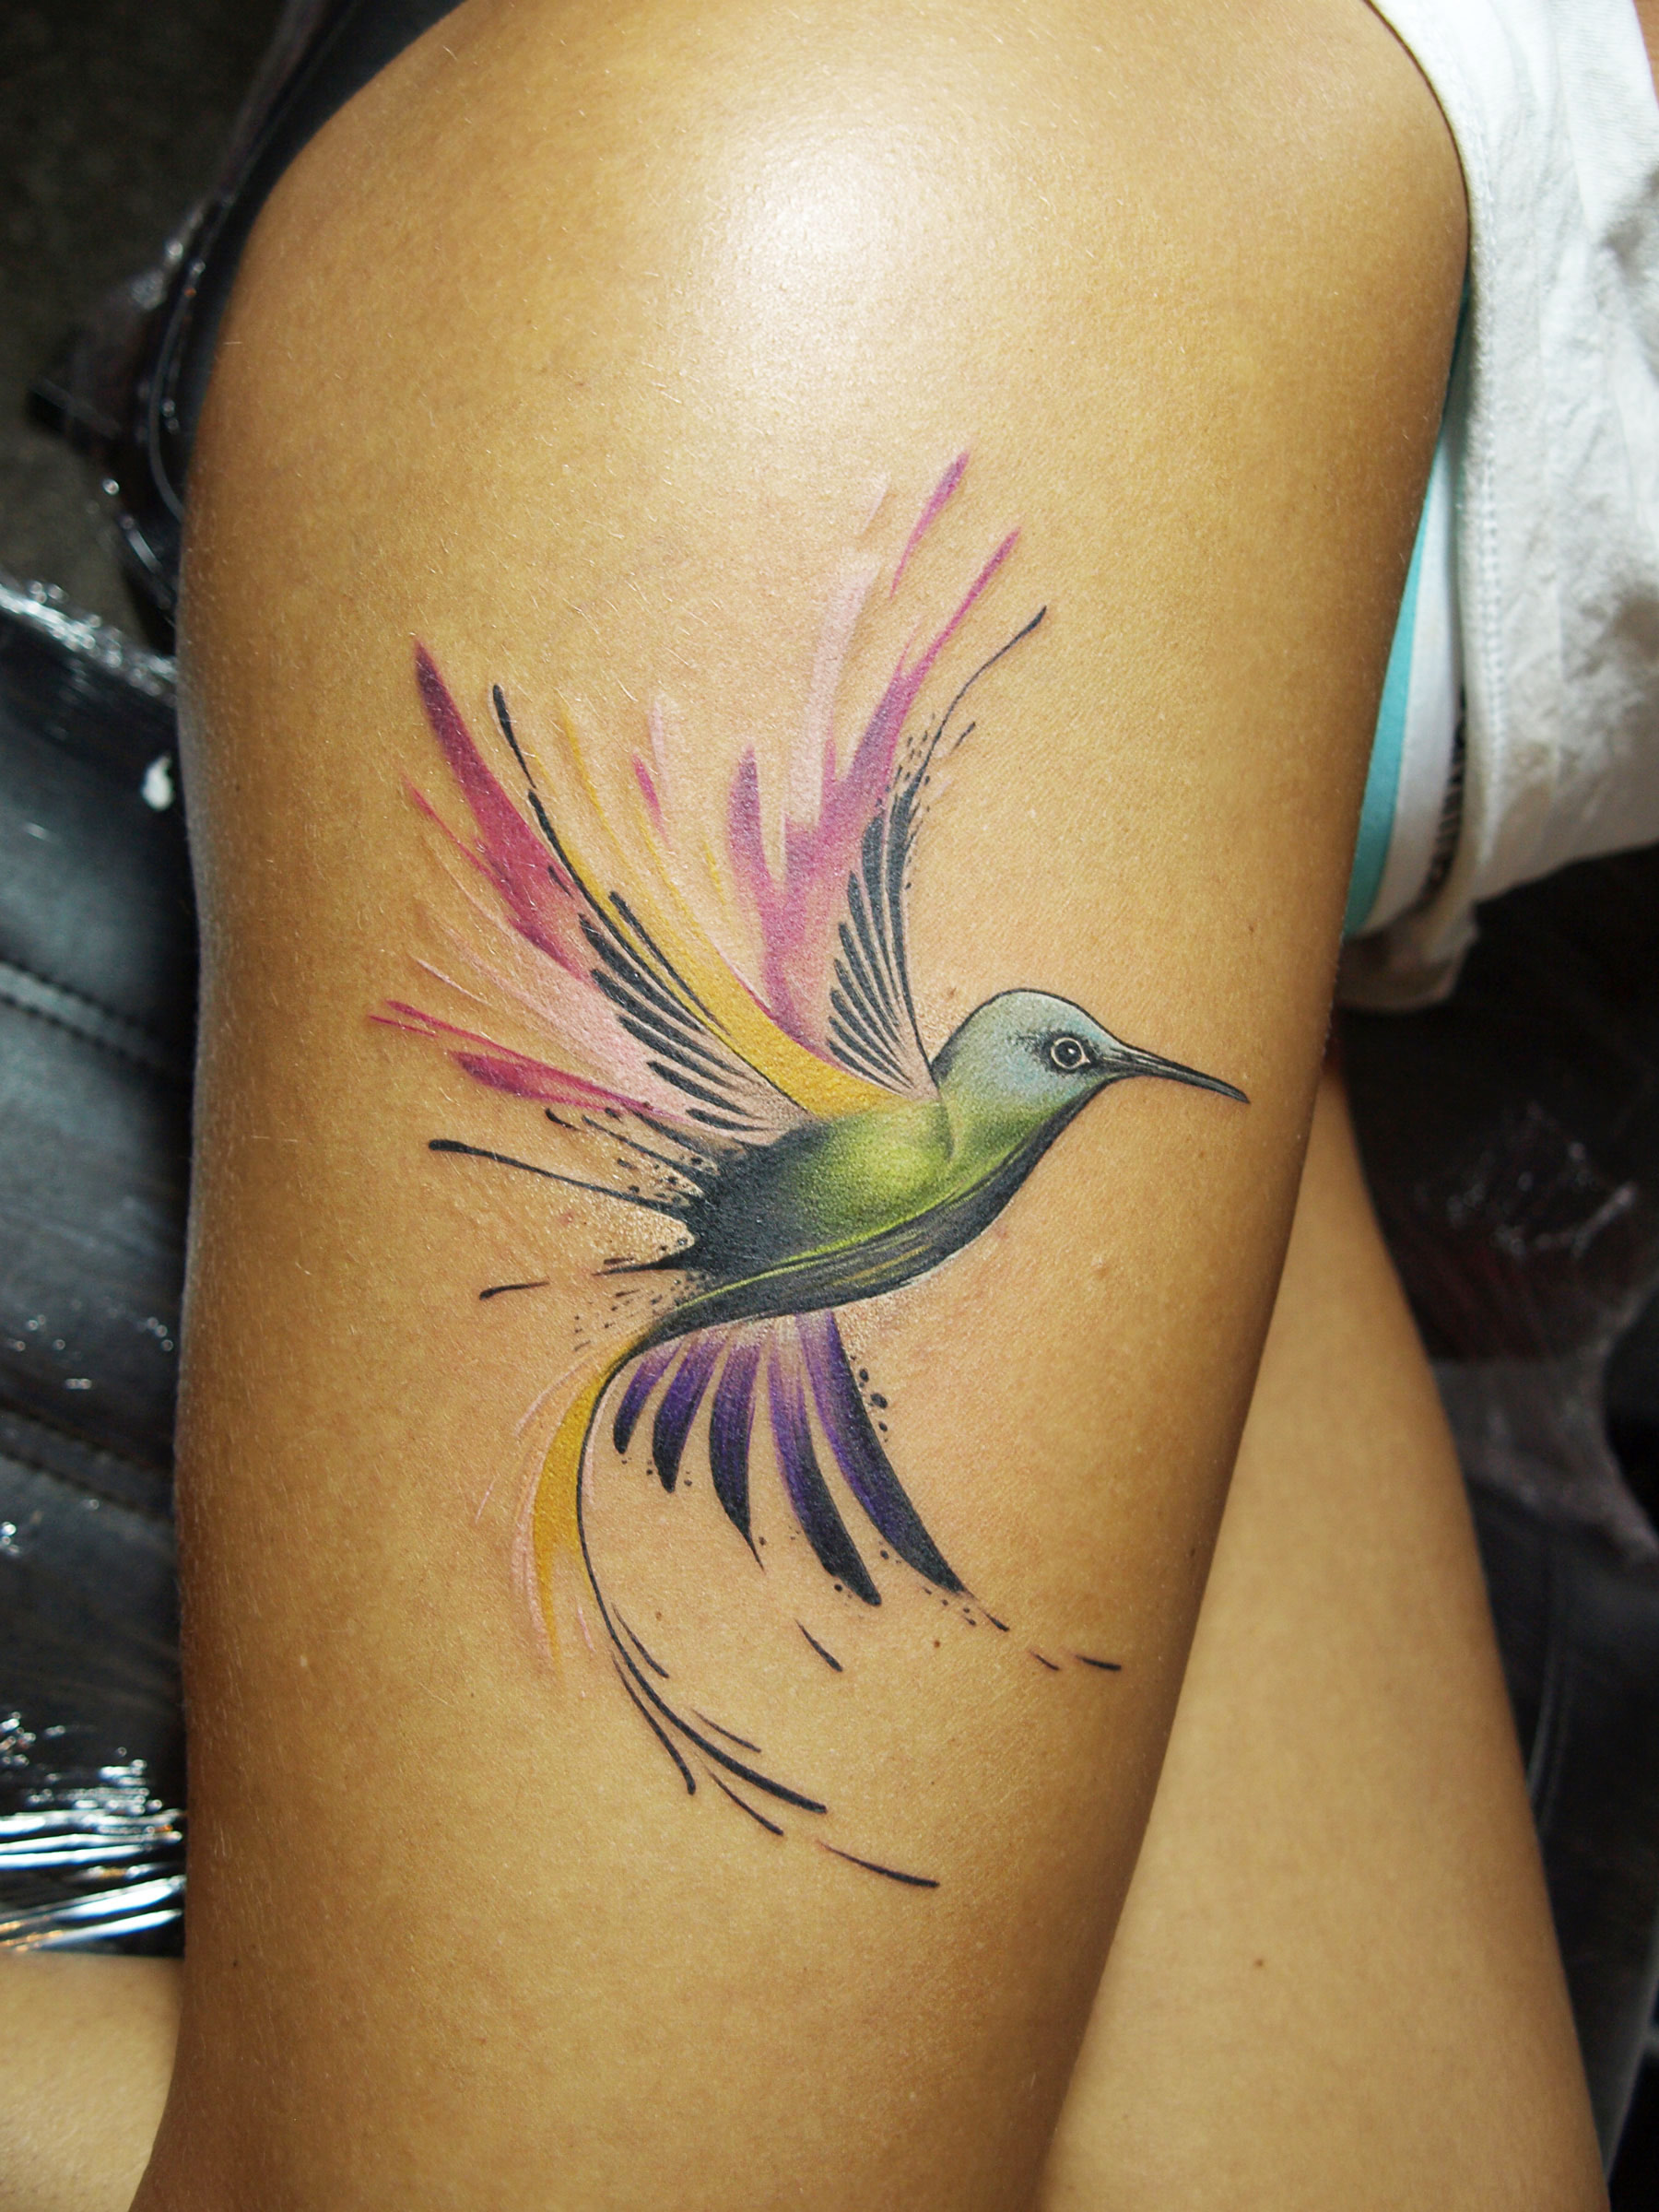 sorn-smb-tattoo-hummingbird-watercolour-brighton.jpg